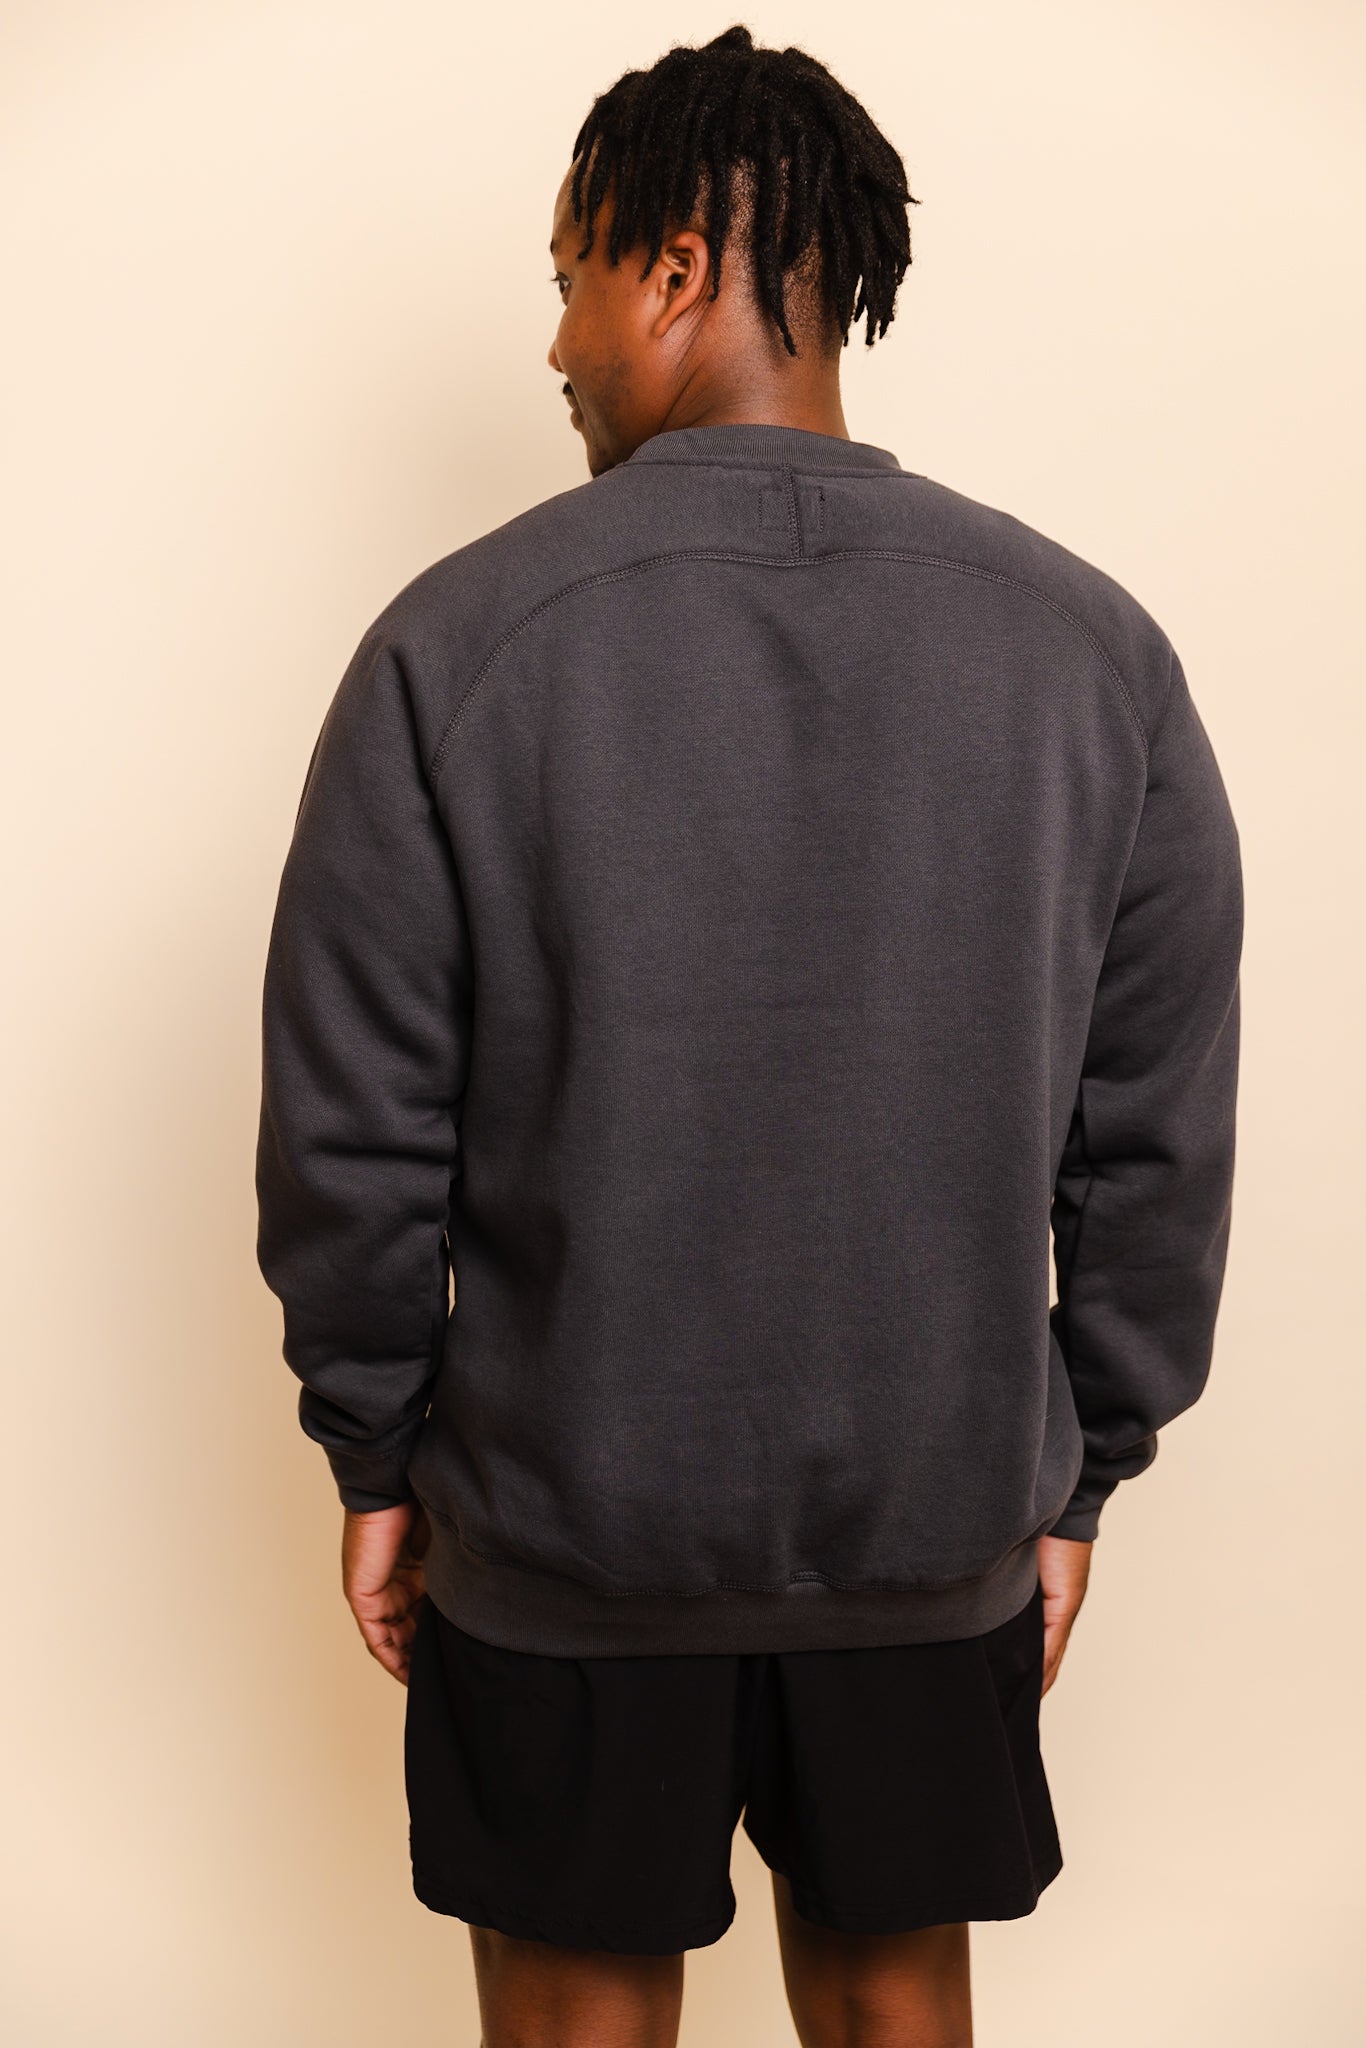 Apex Sweatshirt - Charcoal